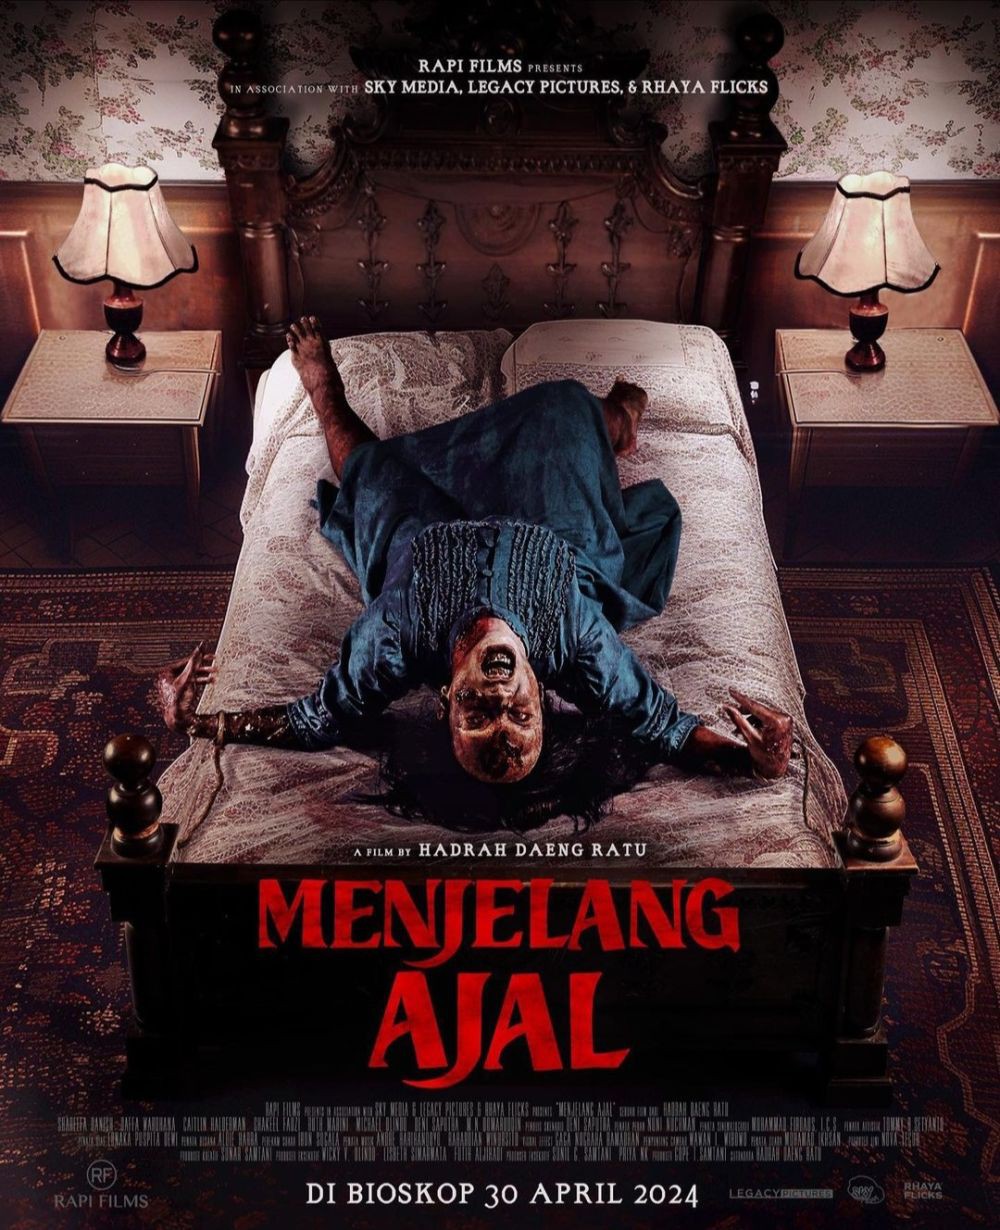 5 Film Horor Terbaru di Bioskop, Angkat Mitos dan Budaya Indonesia